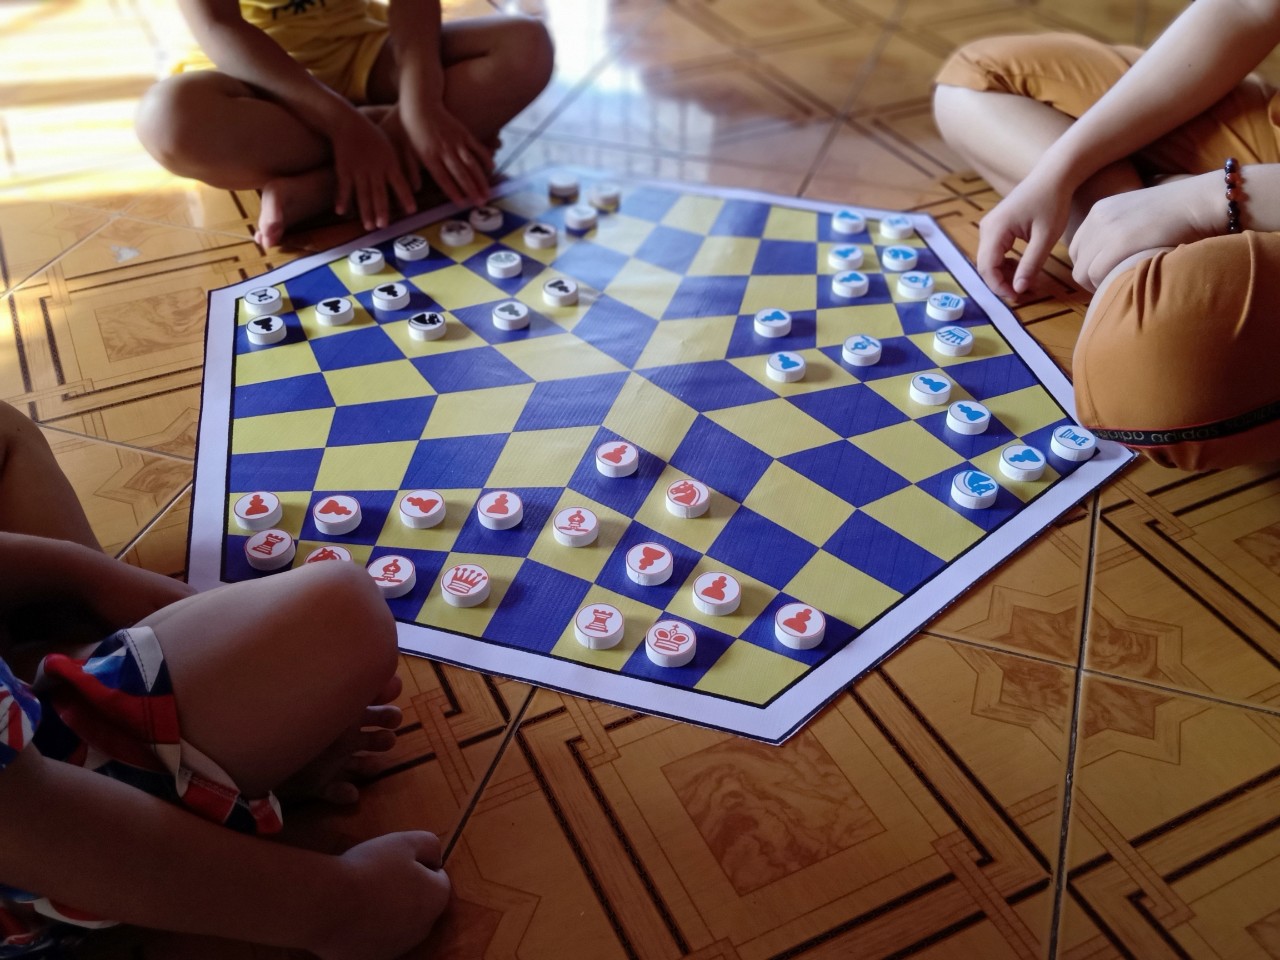 Cờ Vua Tam Quốc là một trò chơi đồng thời là một kiệt tác của nghệ thuật tư duy. Từ 2024, cờ Vua Tam Quốc trở thành môn thể thao mang tính cạnh tranh, thu hút sự quan tâm của rất nhiều người. Hãy xem hình ảnh liên quan đến từ khóa này để cảm nhận sự thông minh và sự cạnh tranh của trò chơi này.